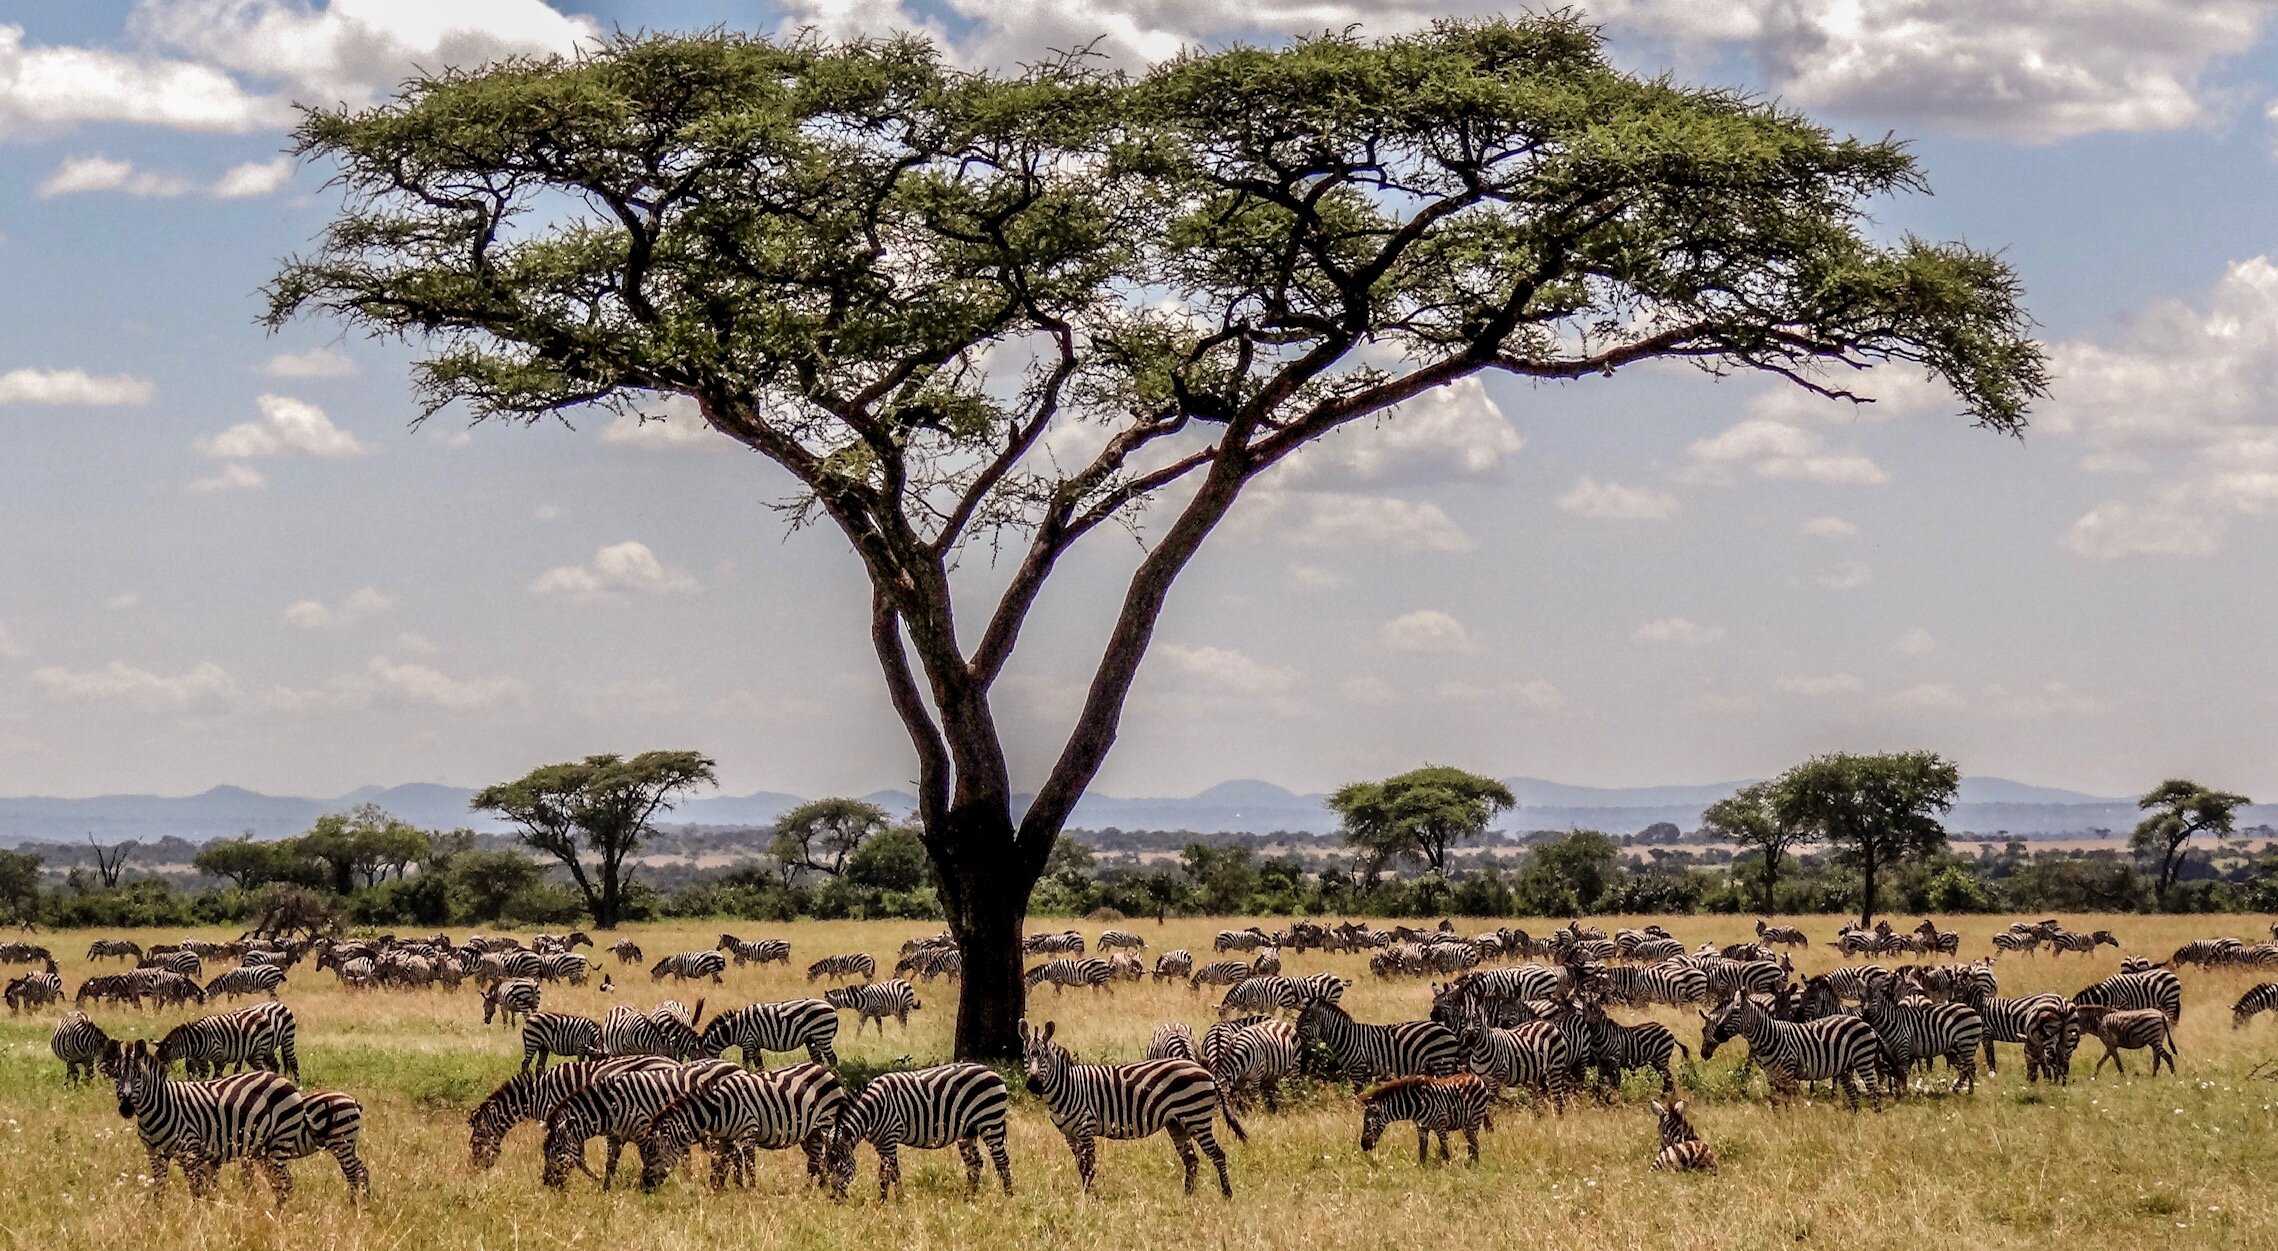 Wildlife in the Serengeti